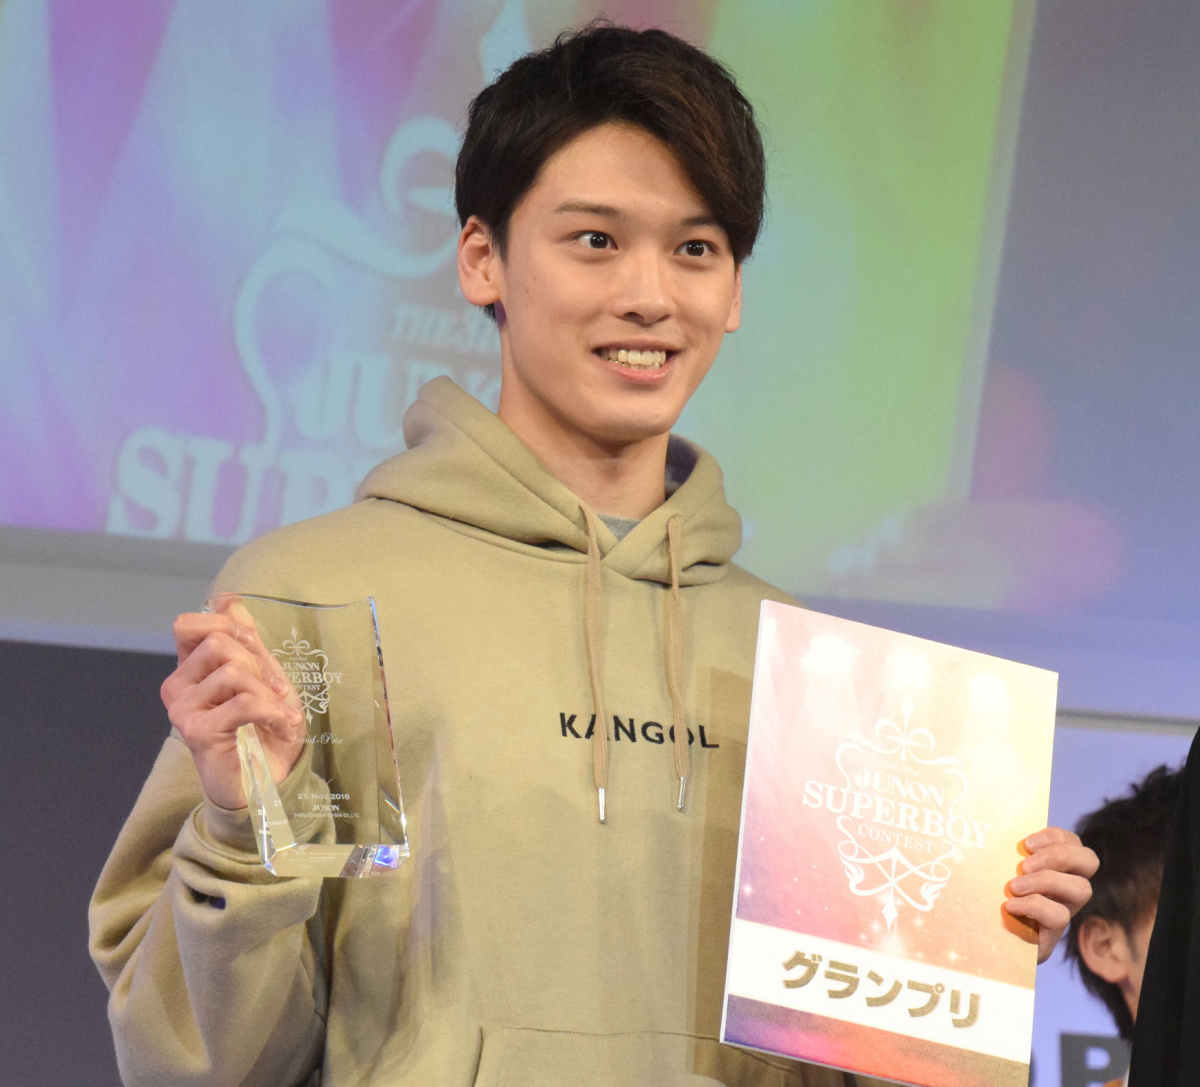 平成最後のジュノンスーパーボーイgp 北海道出身の19歳 松本大輝さんが栄冠 Oricon News